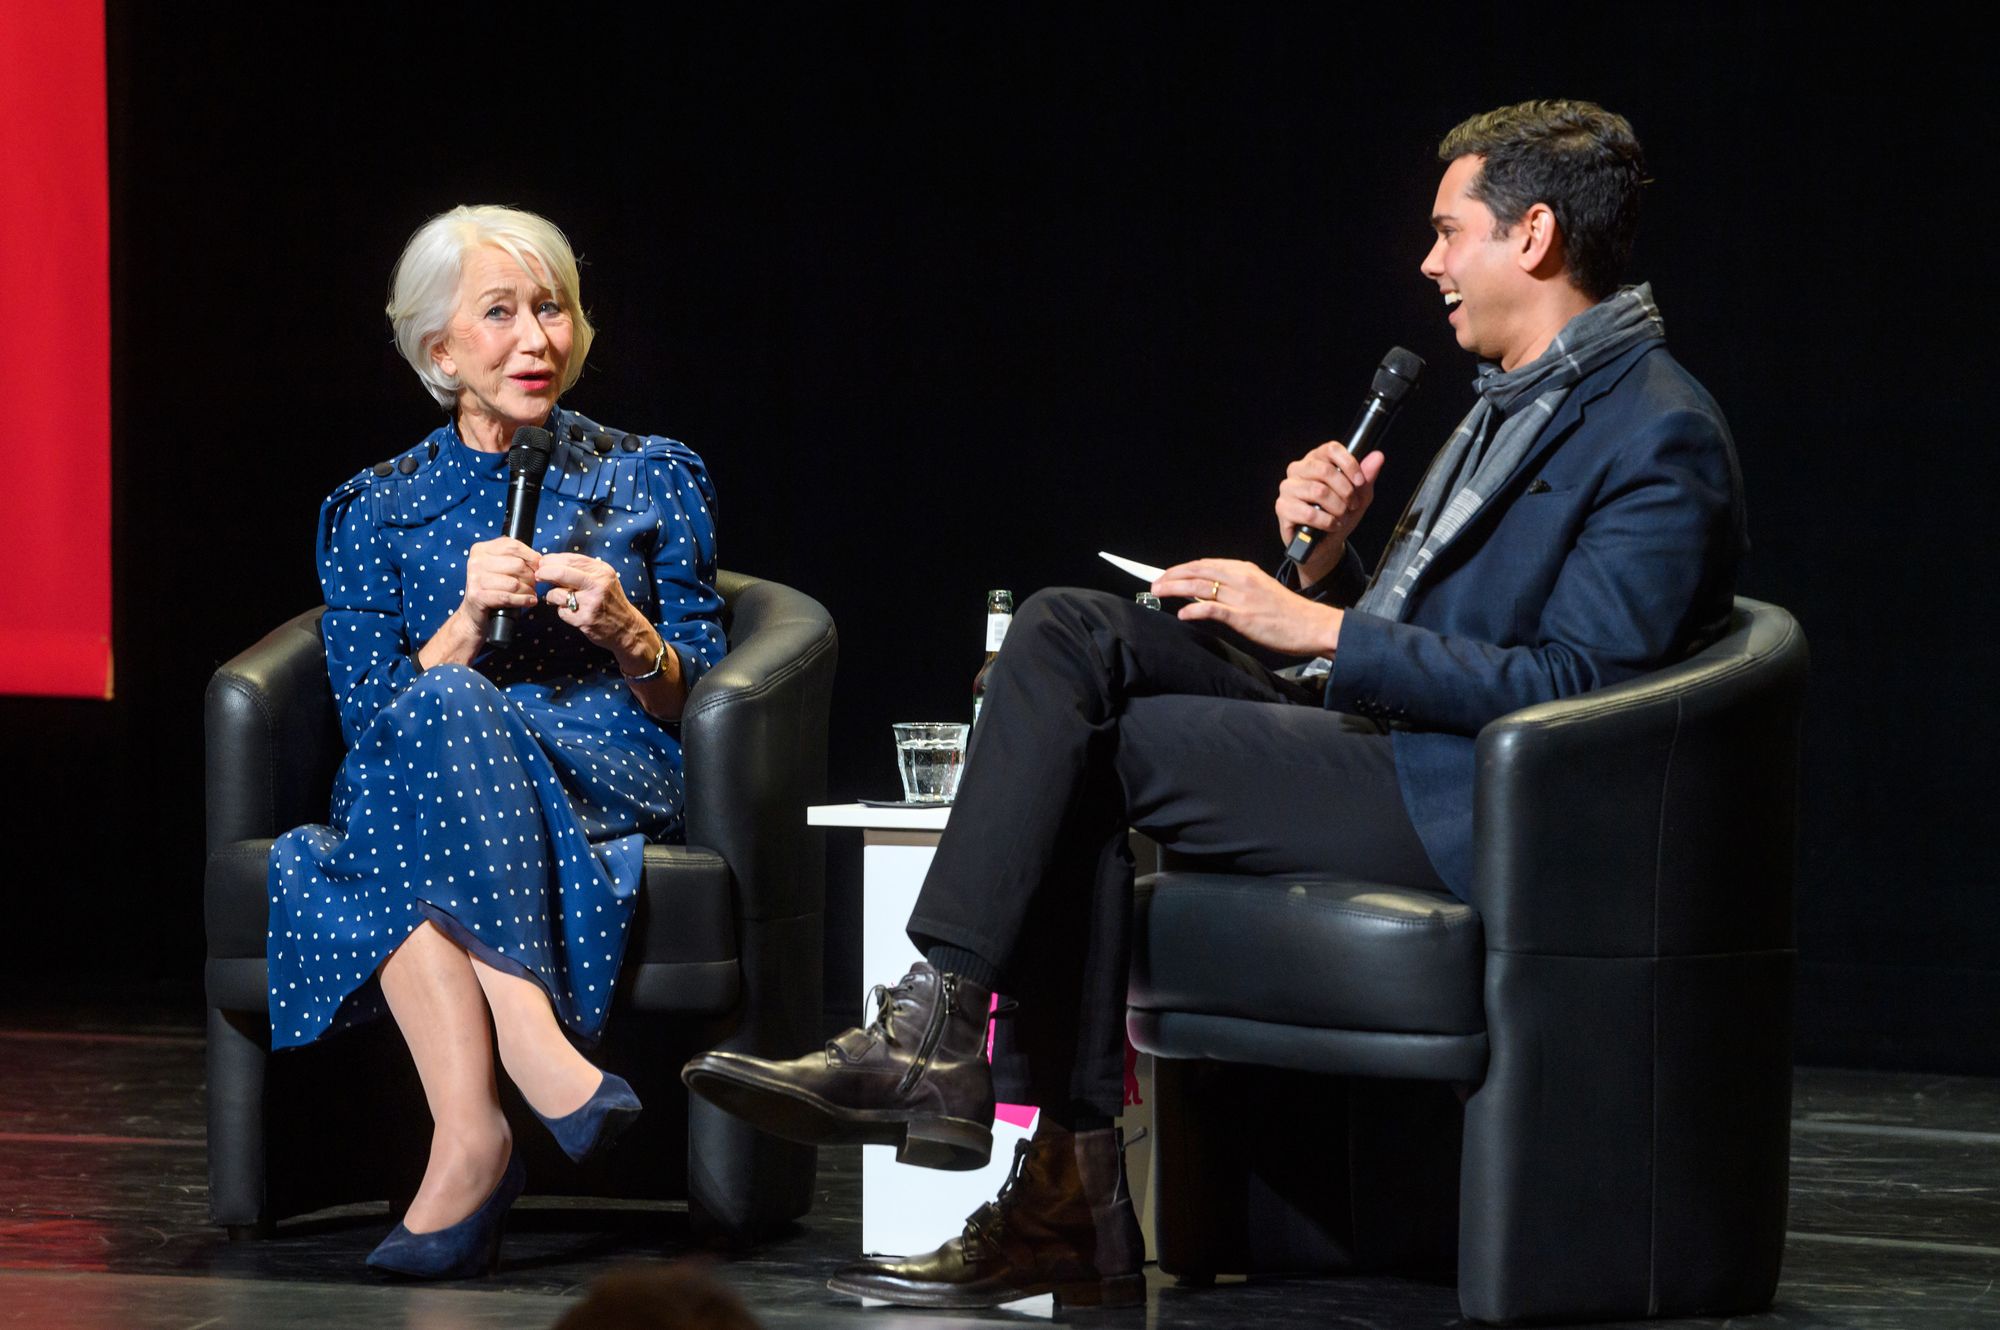 Berlinale Homage In Conversation with Helen Mirren